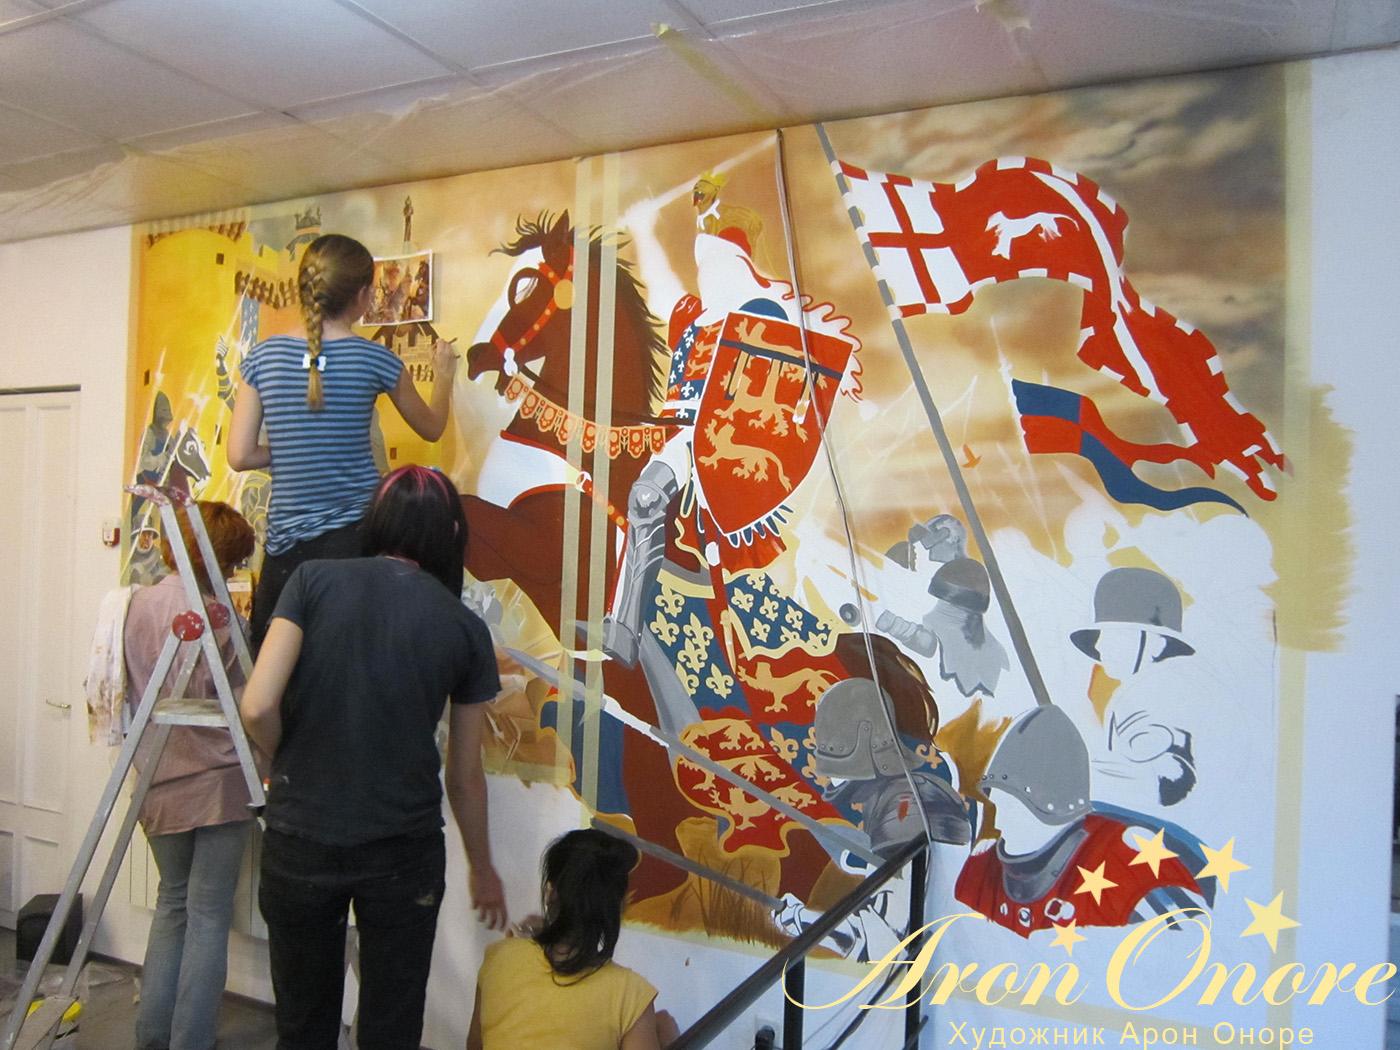 Художники студии аэрографии Aron onore  трудятся над созданием рисунка на стене